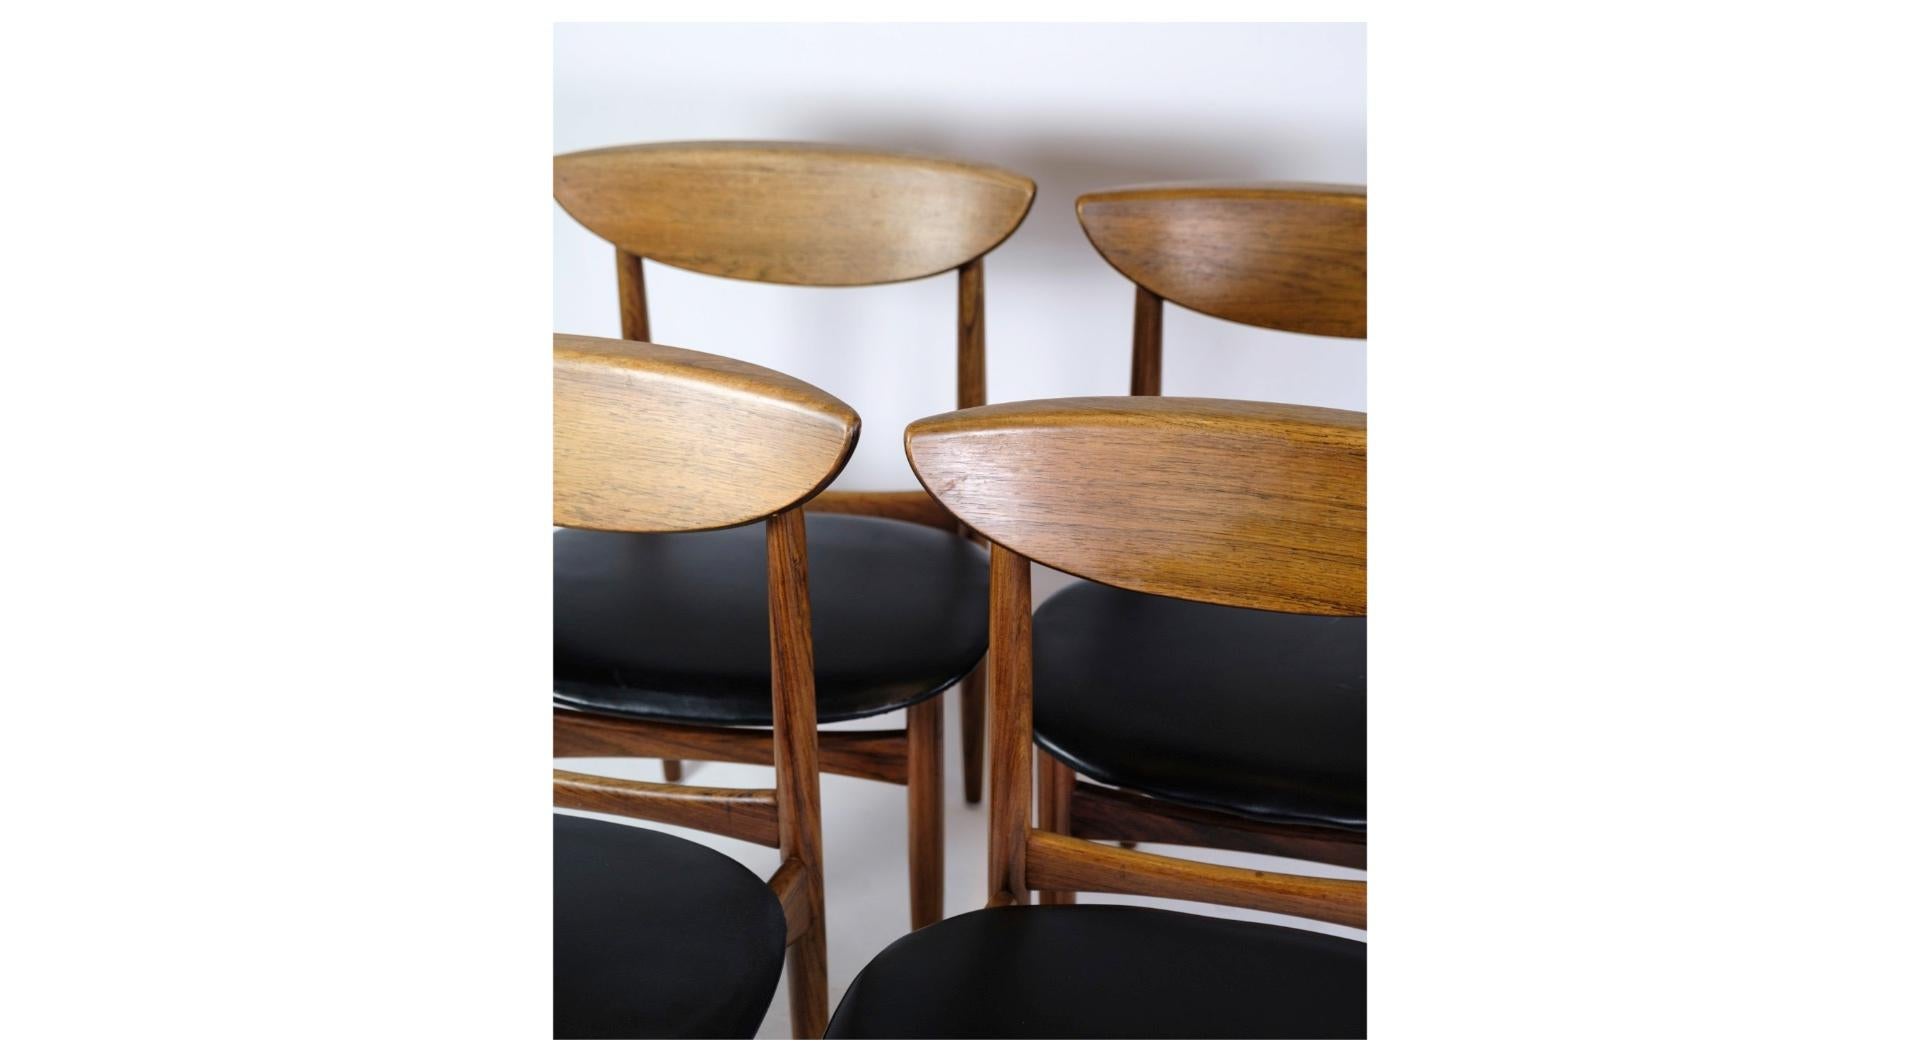 Cet ensemble de quatre chaises de salle à manger, fabriquées en bois de rose exquis et conçues par Kurt Østervig pour K.P. Møbler dans les années 1960, incarne l'élégance intemporelle du design danois du milieu du siècle.

Avec leurs lignes épurées